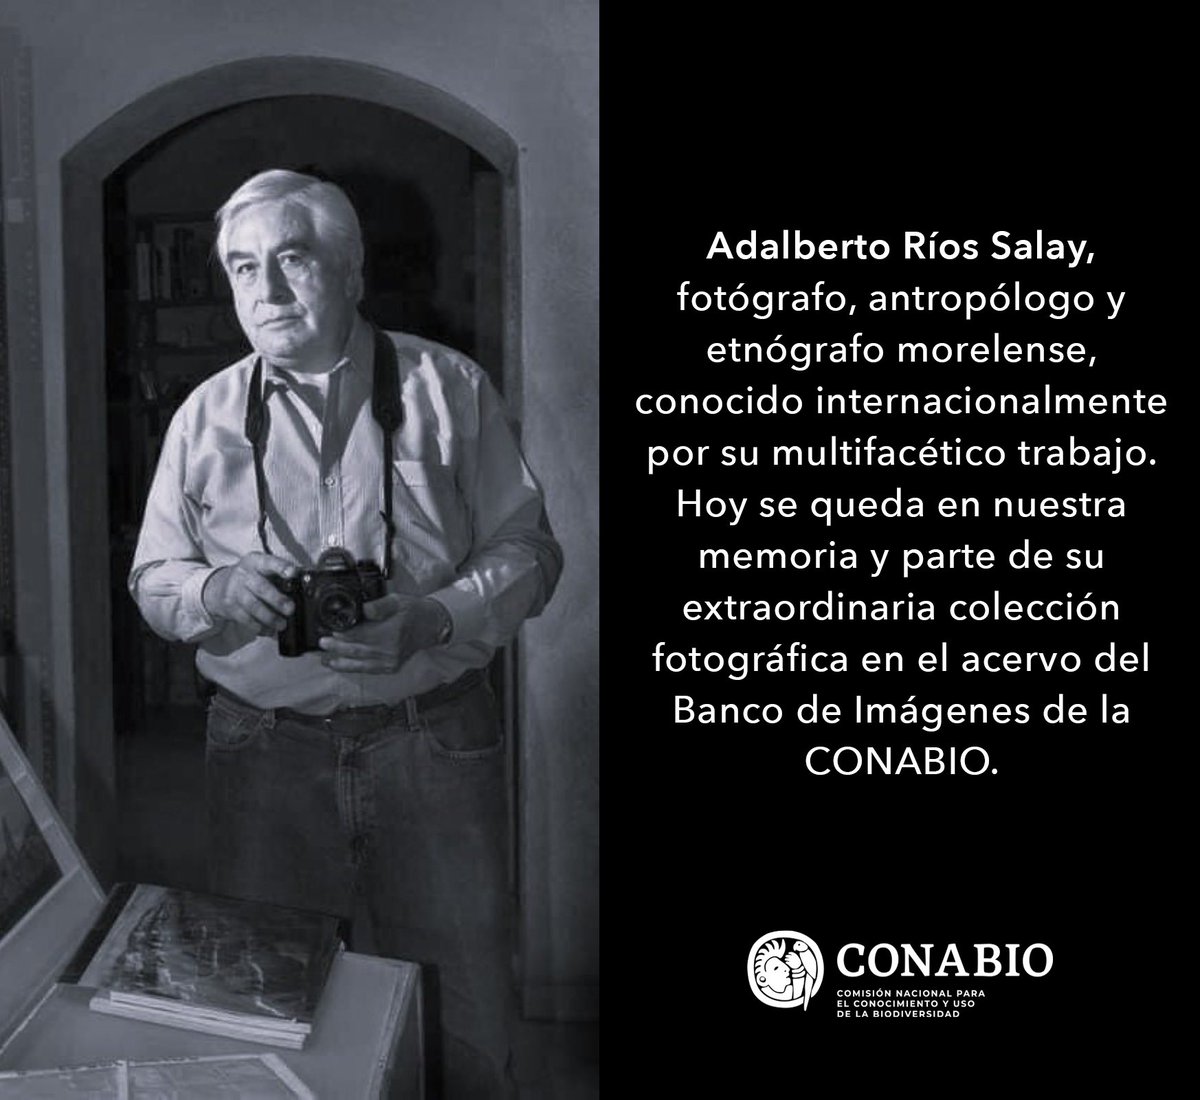 Adalberto Ríos Salay, fotógrafo, antropólogo y etnógrafo morelense, conocido internacionalmente por su multifacético trabajo. Hoy se queda en nuestra memoria y parte de su extraordinaria colección fotográfica en el acervo del Banco de Imágenes de la CONABIO. D.E.P